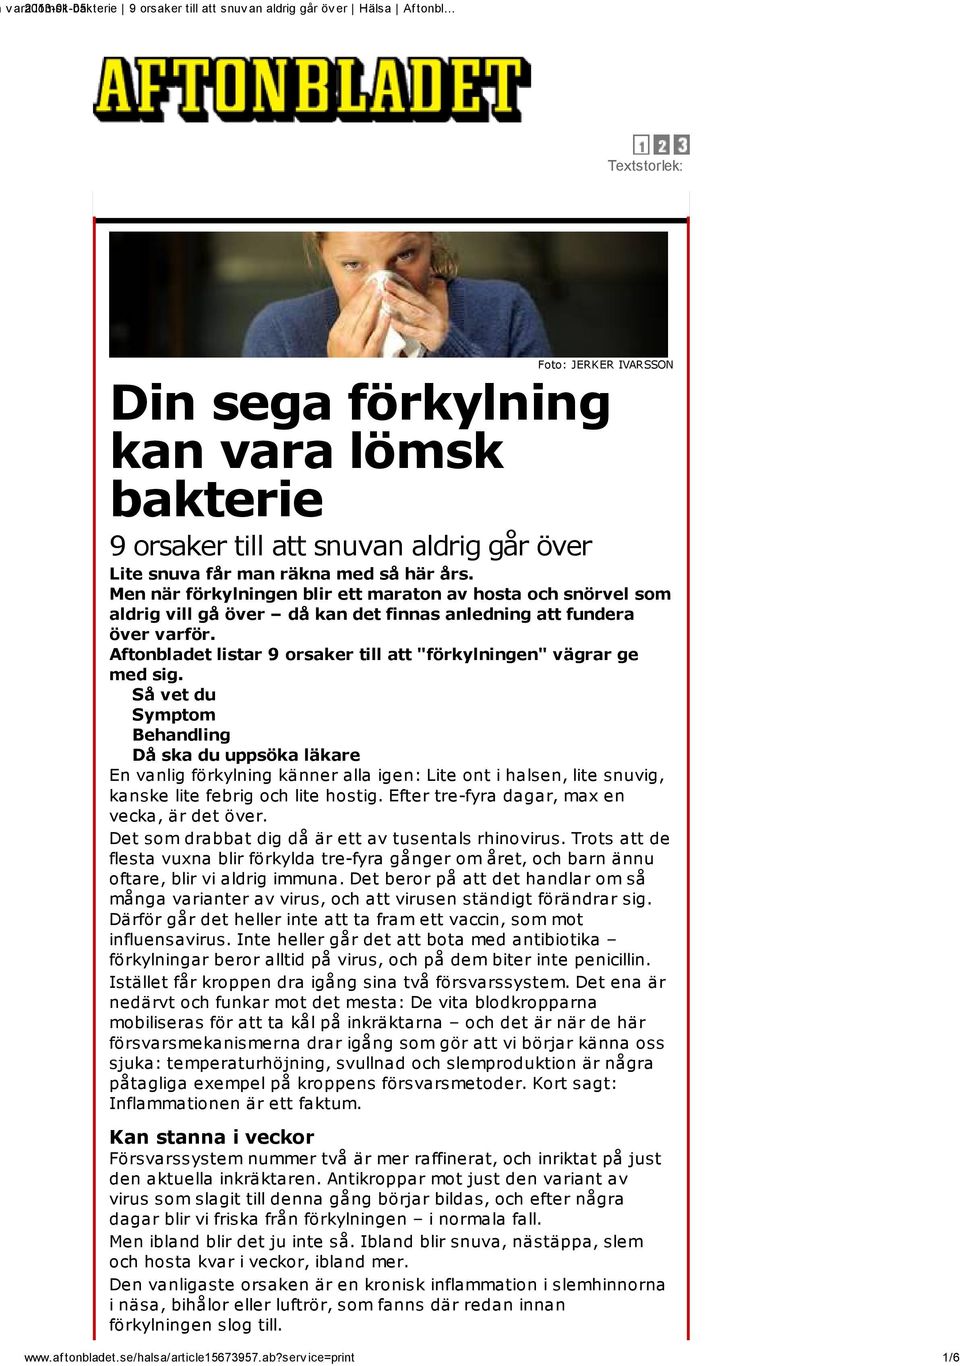 Aftonbladet listar 9 orsaker till att "förkylningen" vägrar ge med sig.